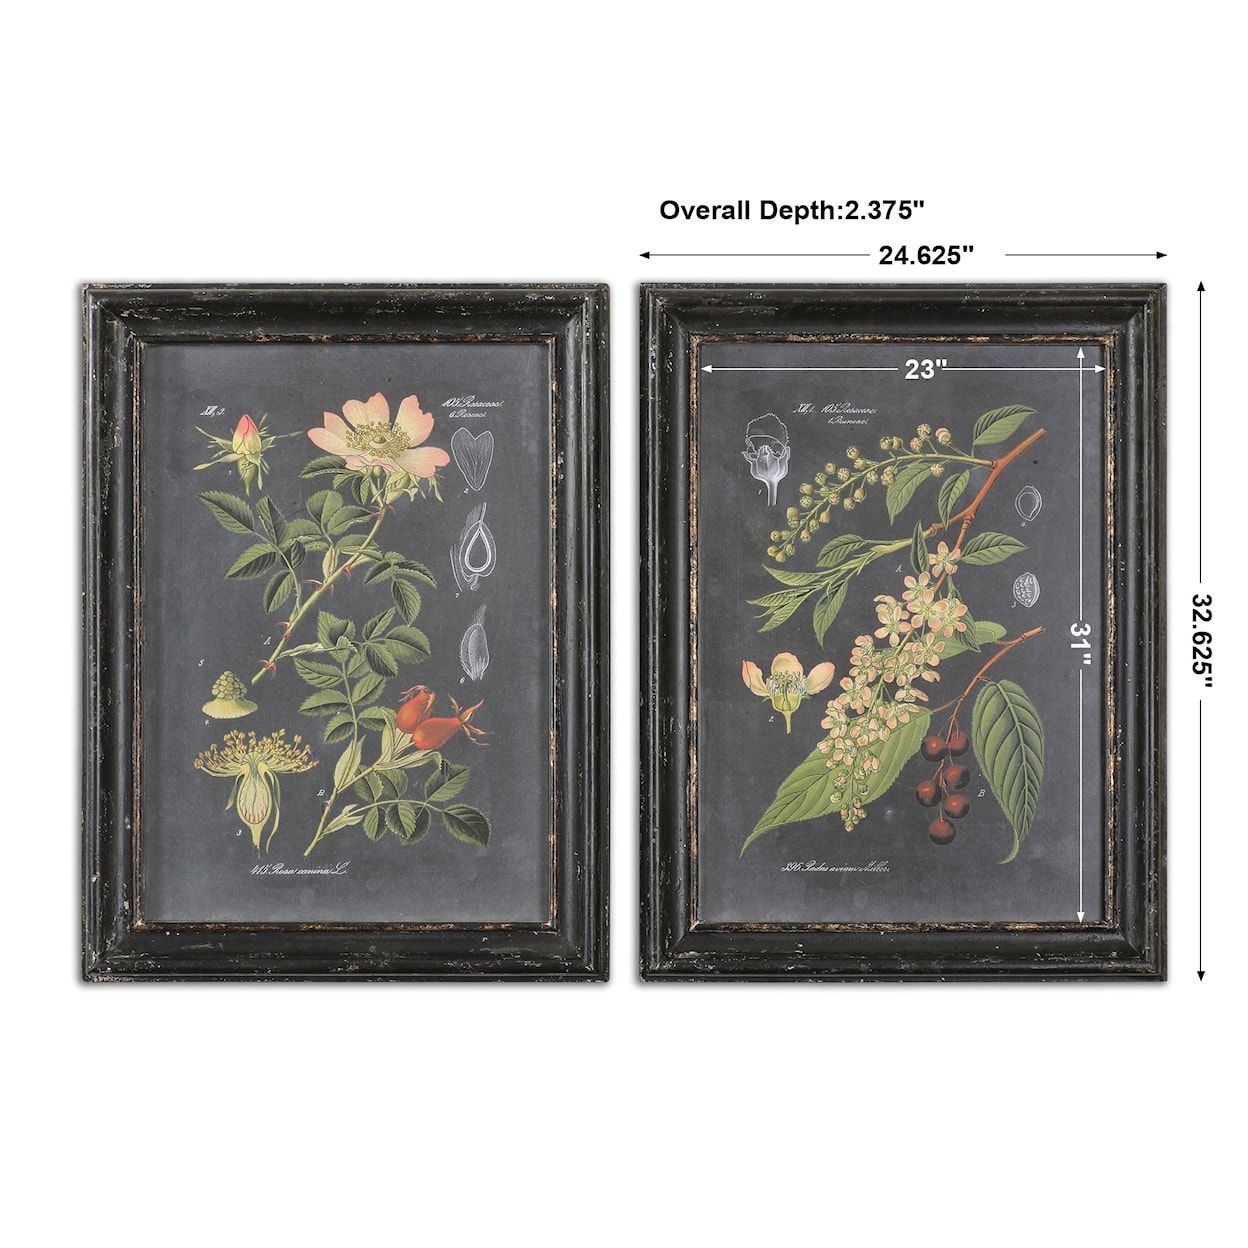 Uttermost Framed Prints Midnight Botanicals Framed Prints, Set of 2